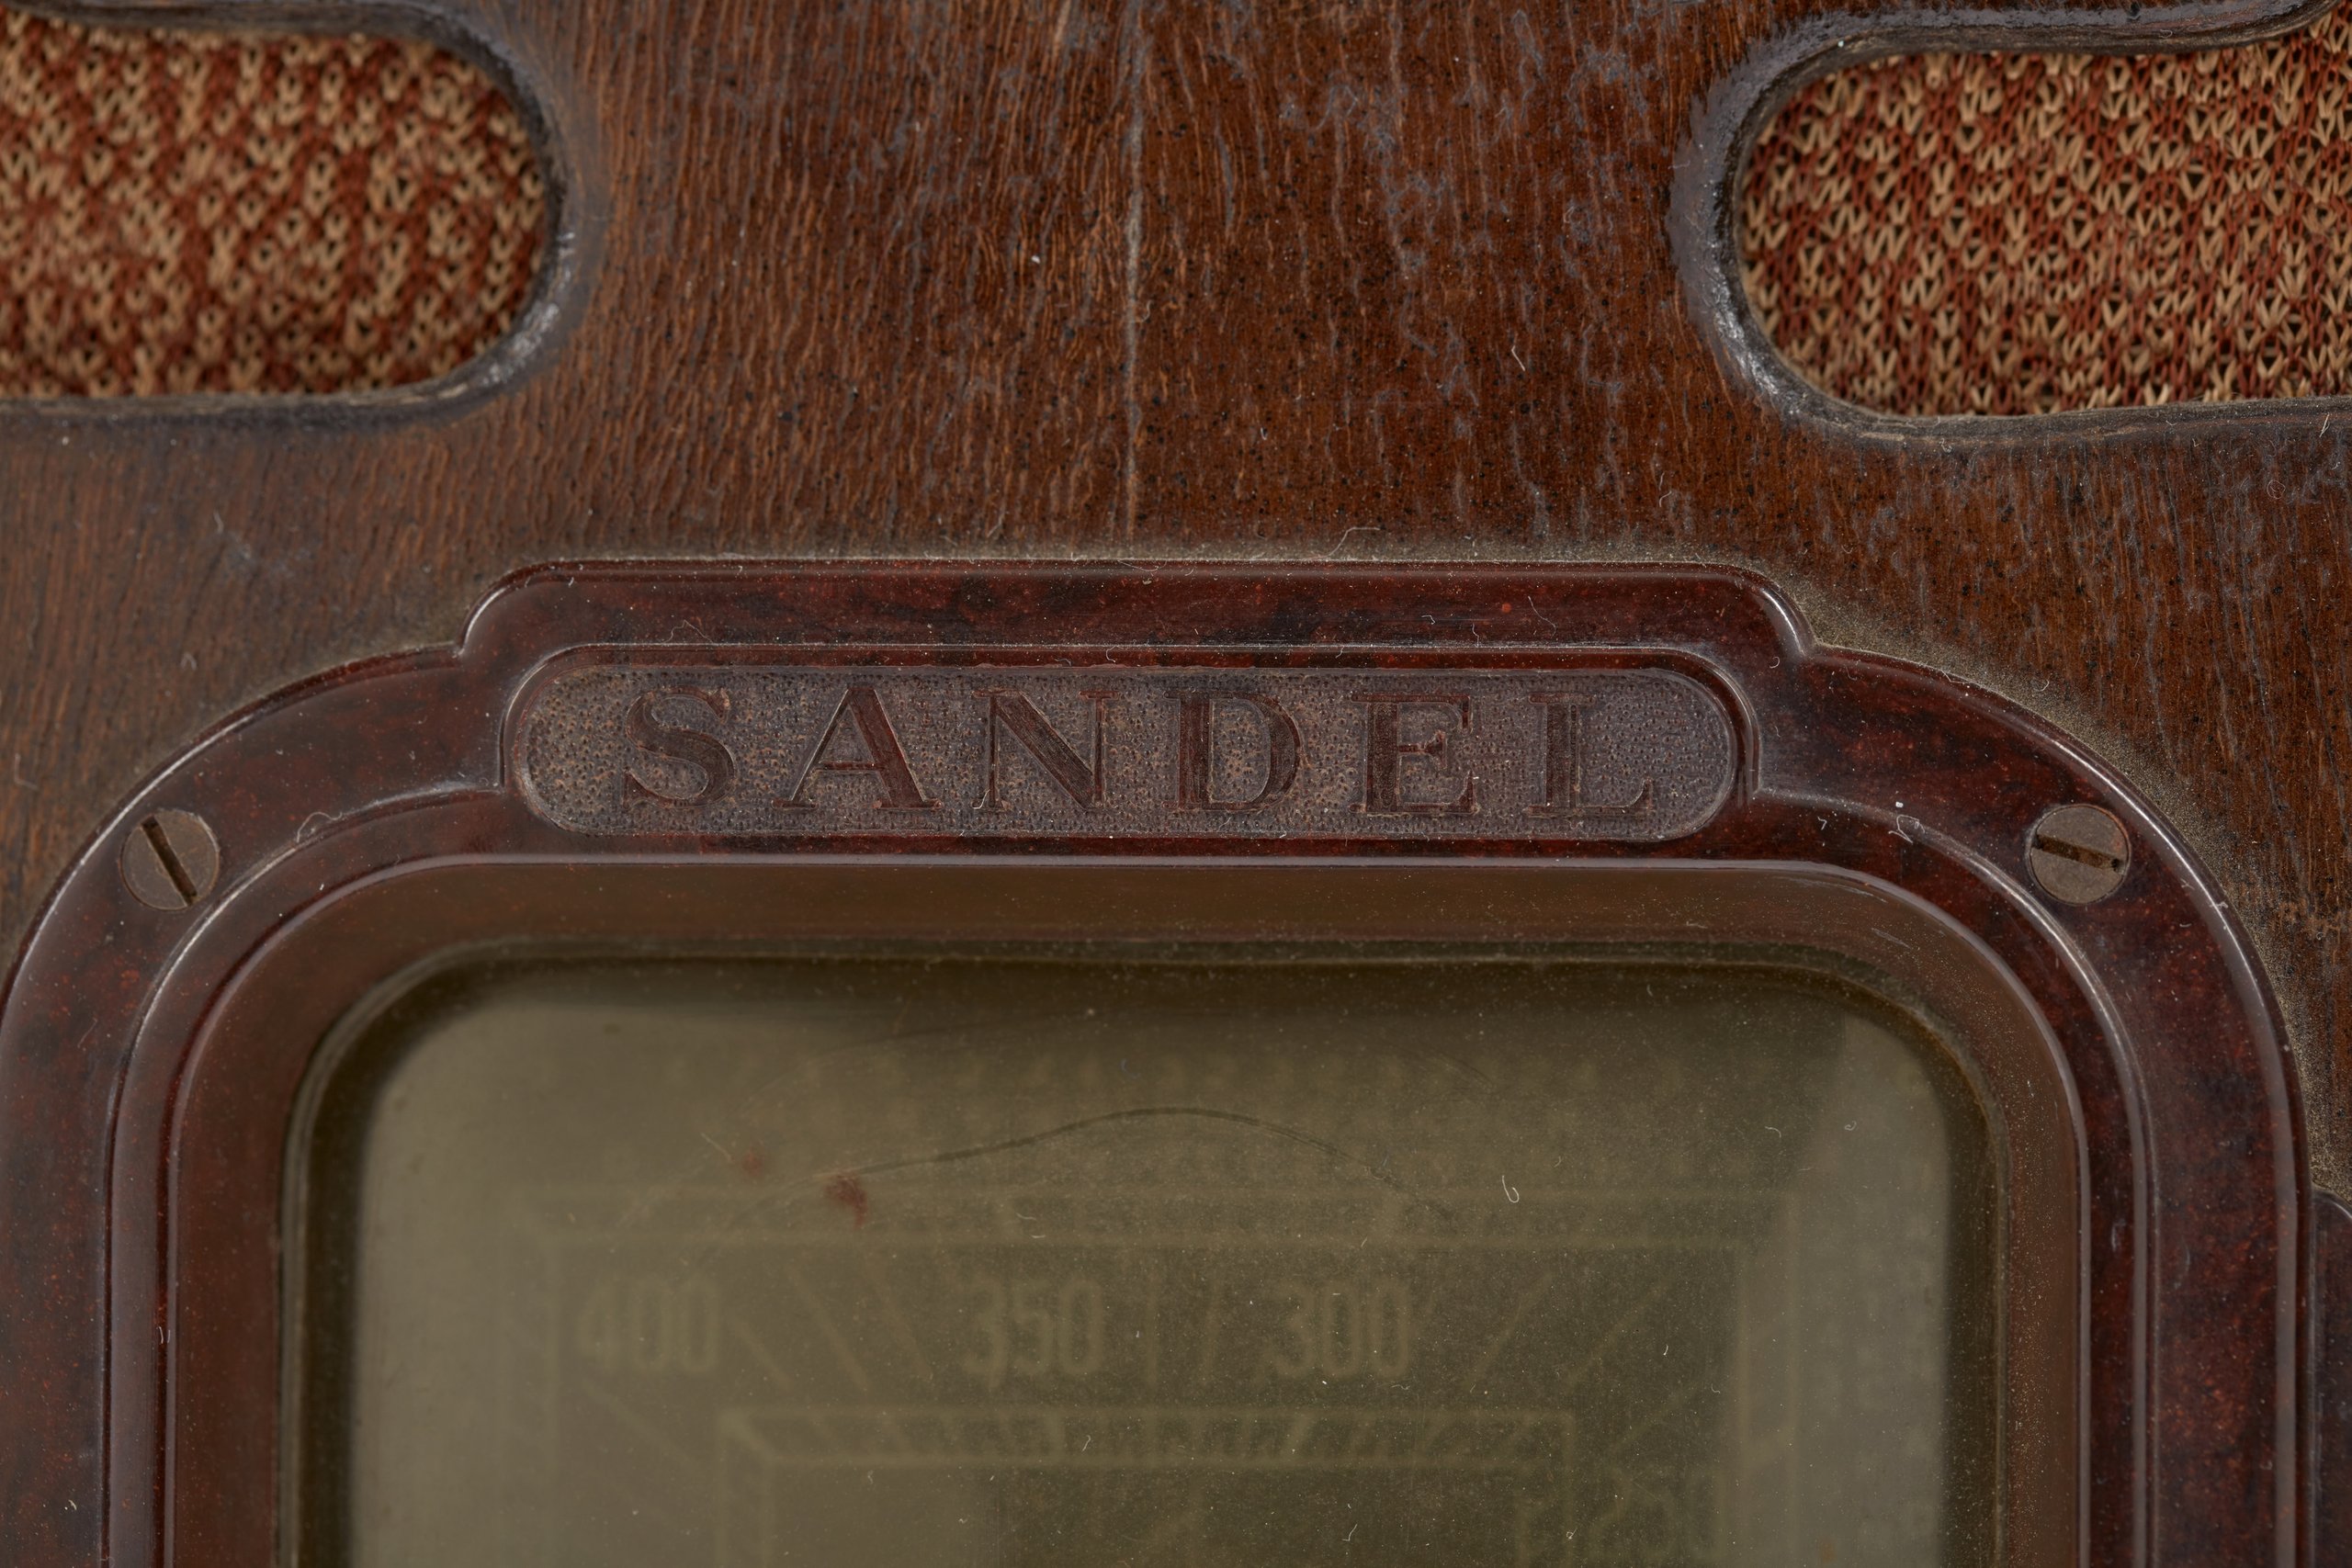 Sandel radio made in Australia